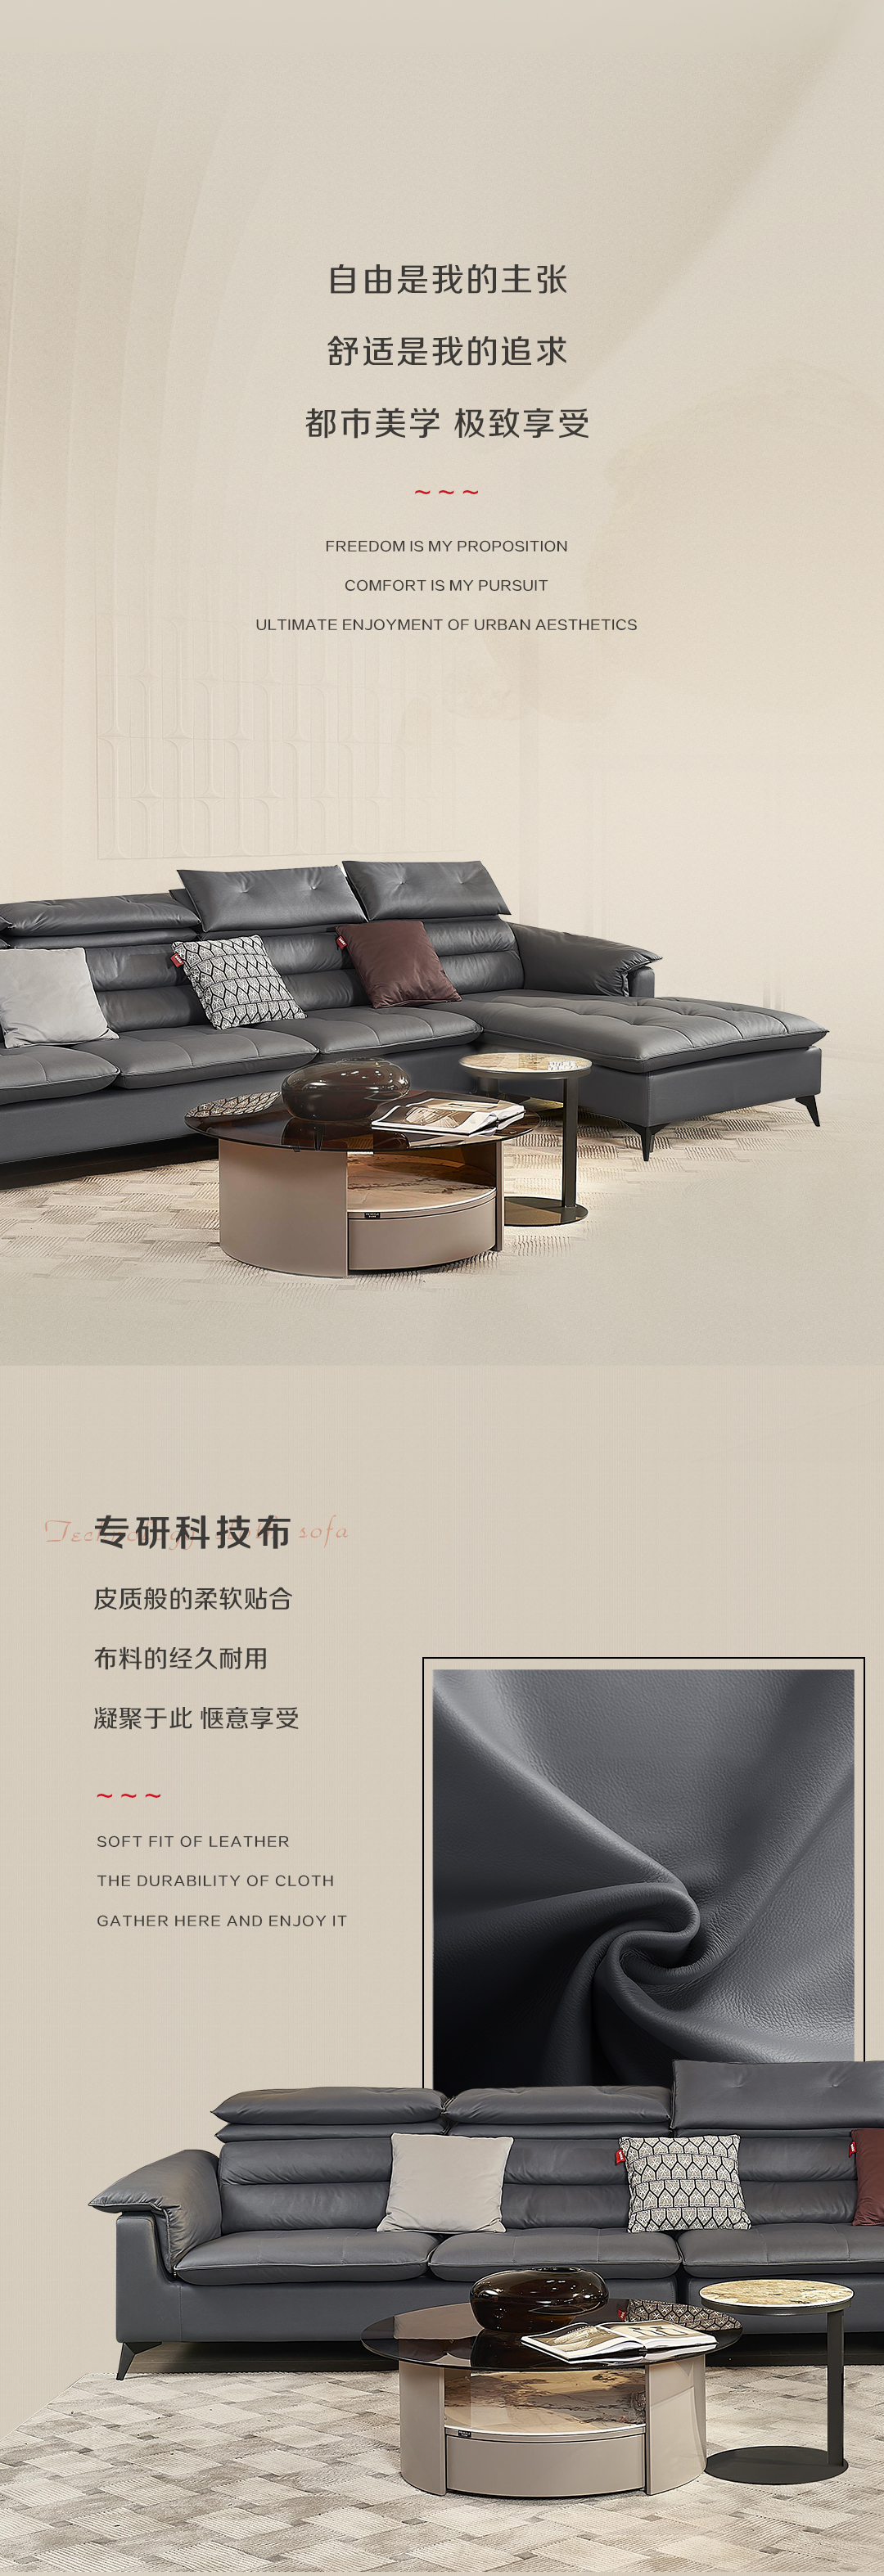 新品上市|MJ.SFB5003沙发 舒适得像另一张床